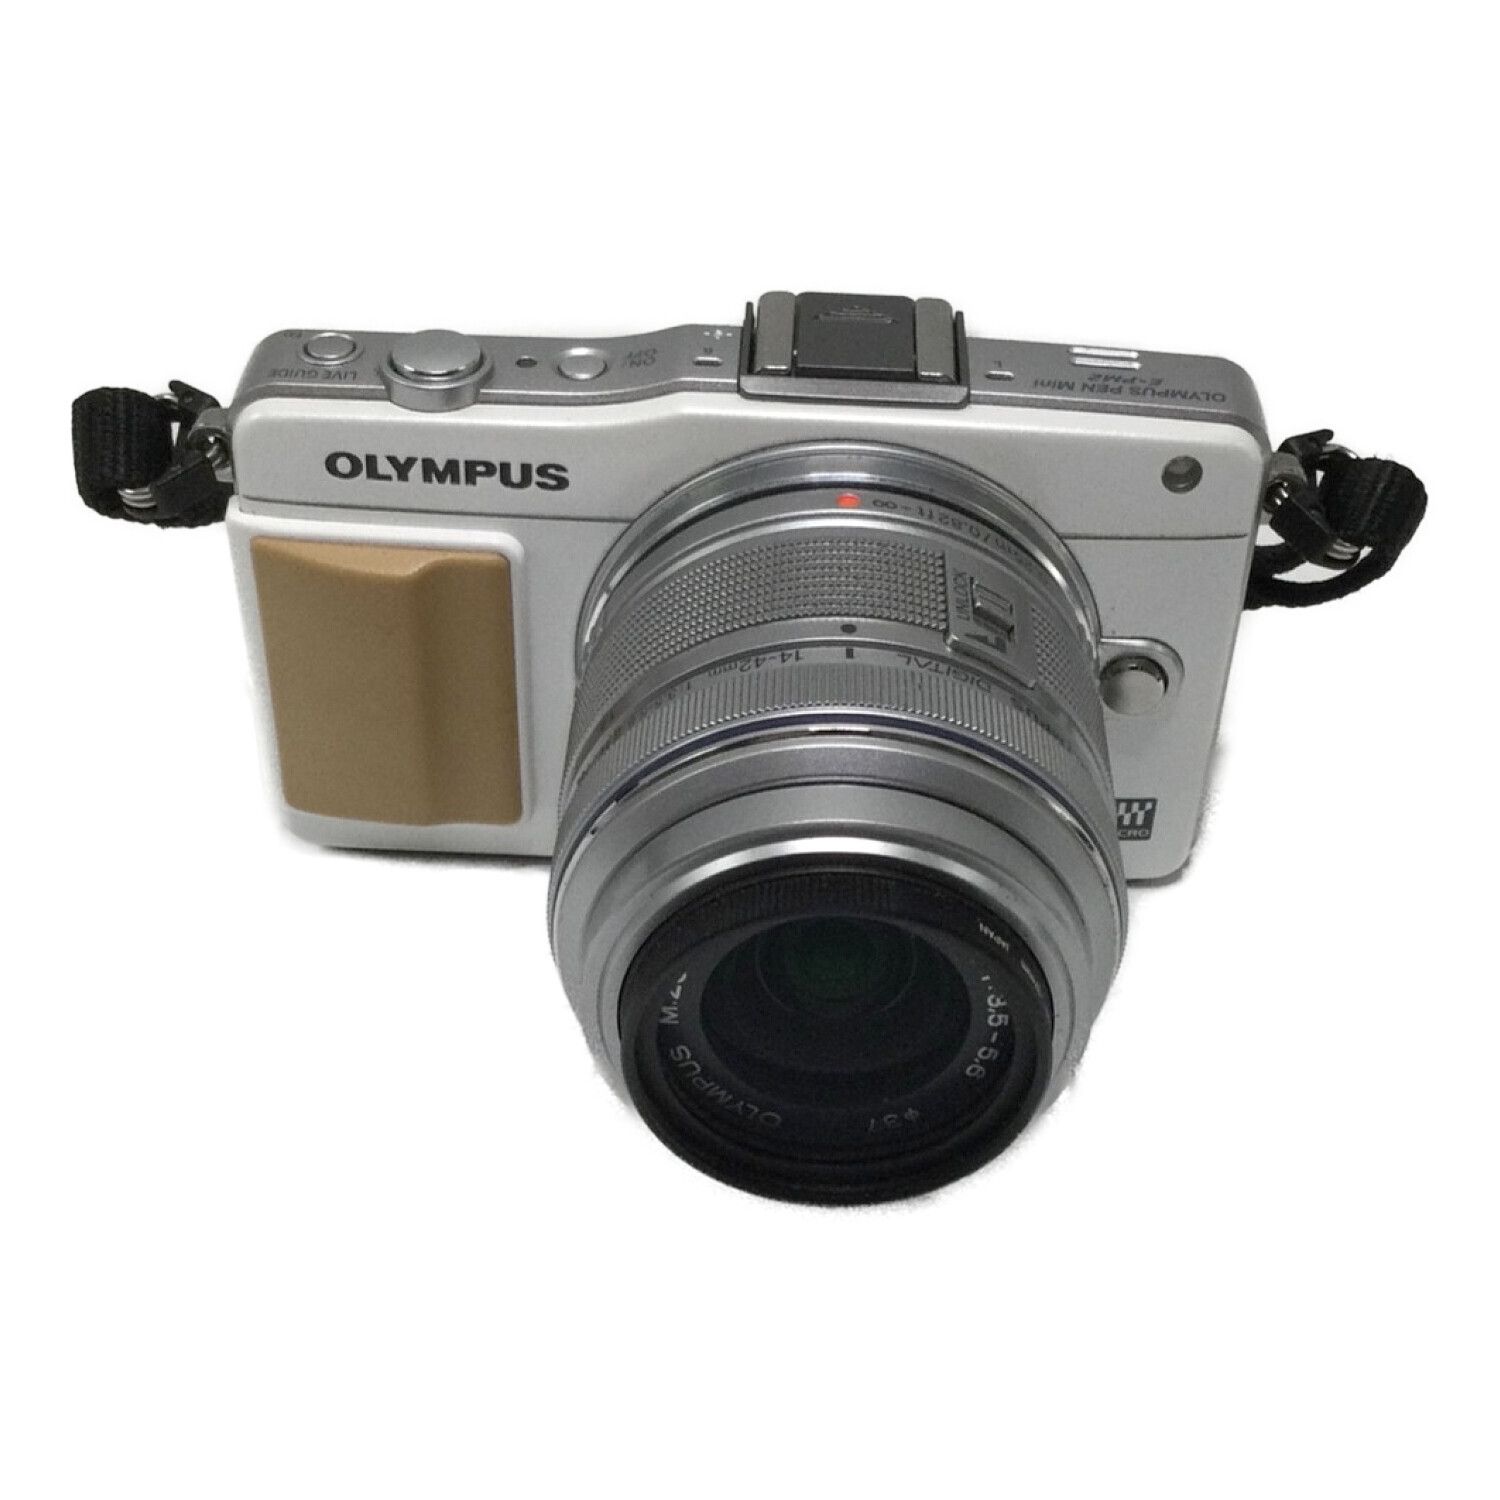 OLYMPUS (オリンパス) ミラーレス一眼カメラ ダブルレンズキット E-PM2 ...